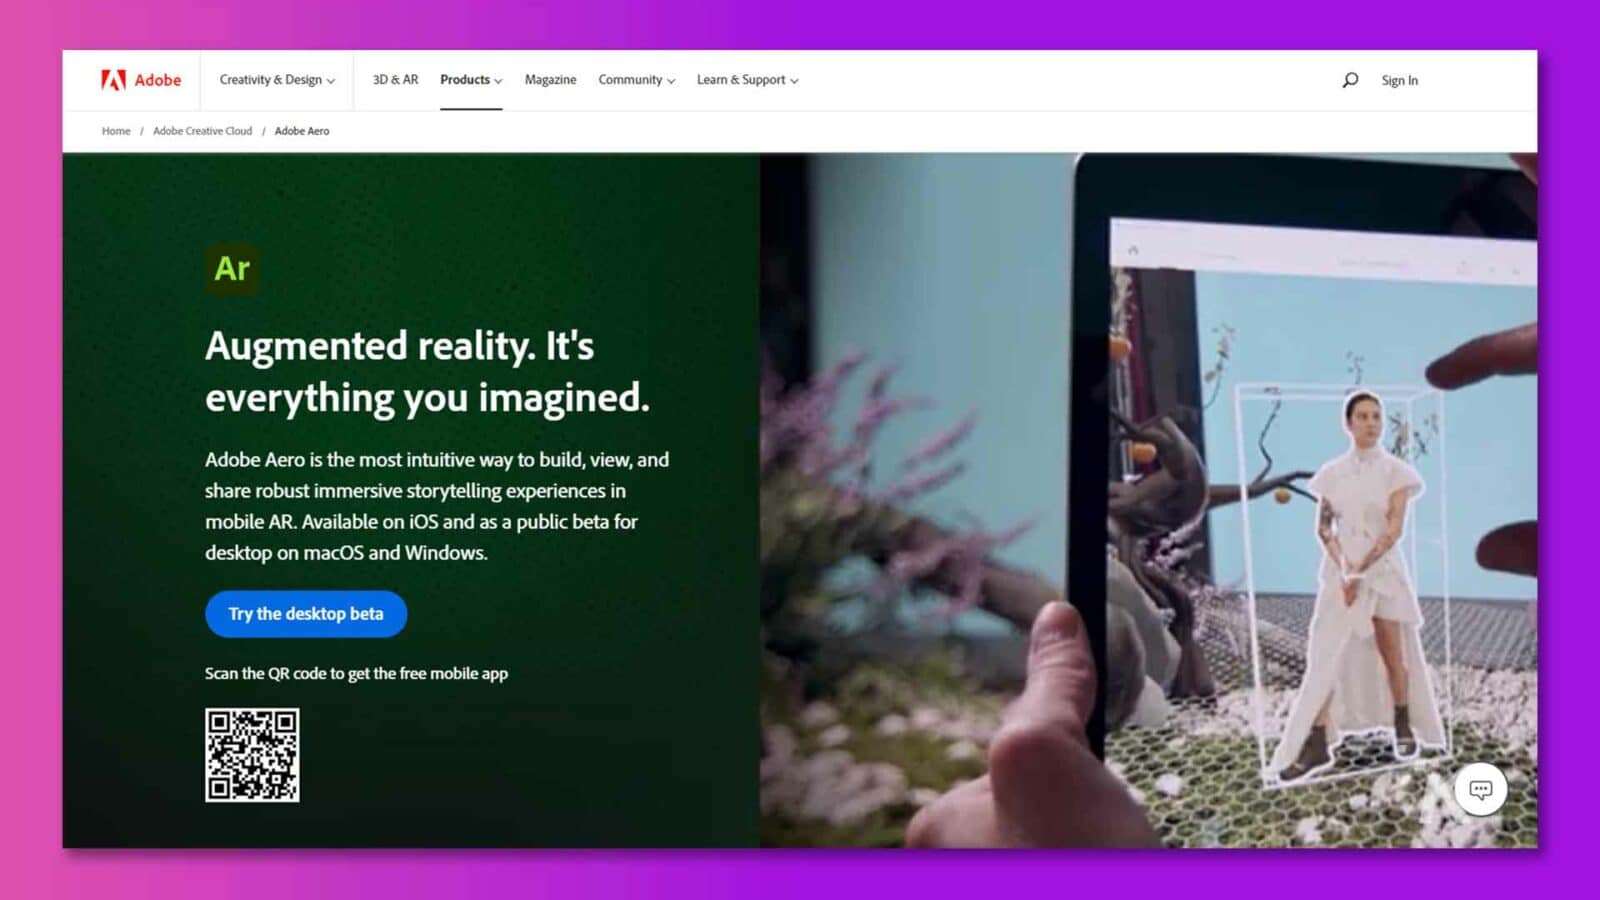 Adobe Aero ist eine Augmented-Reality-Plattform, die es Benutzern ermöglicht, immersive Storytelling-Erlebnisse auf Mobil- und Desktop-Geräten zu erstellen, anzuzeigen und zu teilen. Volltext: MwSt. Adobe Creativity & Design v 3D & AR Products v Magazine Community v Learn & Support v Sign In Home / Adobe Creative Cloud / Adobe Aero Ar Augmented Reality. Es ist alles, was Sie sich vorgestellt haben. Adobe Aero ist die intuitivste Möglichkeit, umfassende immersive Storytelling-Erlebnisse in mobiler AR zu erstellen, anzuzeigen und zu teilen. Verfügbar für iOS und als öffentliche Beta für den Desktop unter macOS und Windows. Probieren Sie die Desktop-Beta aus. Scannen Sie den QR-Code, um die kostenlose mobile App zu erhalten